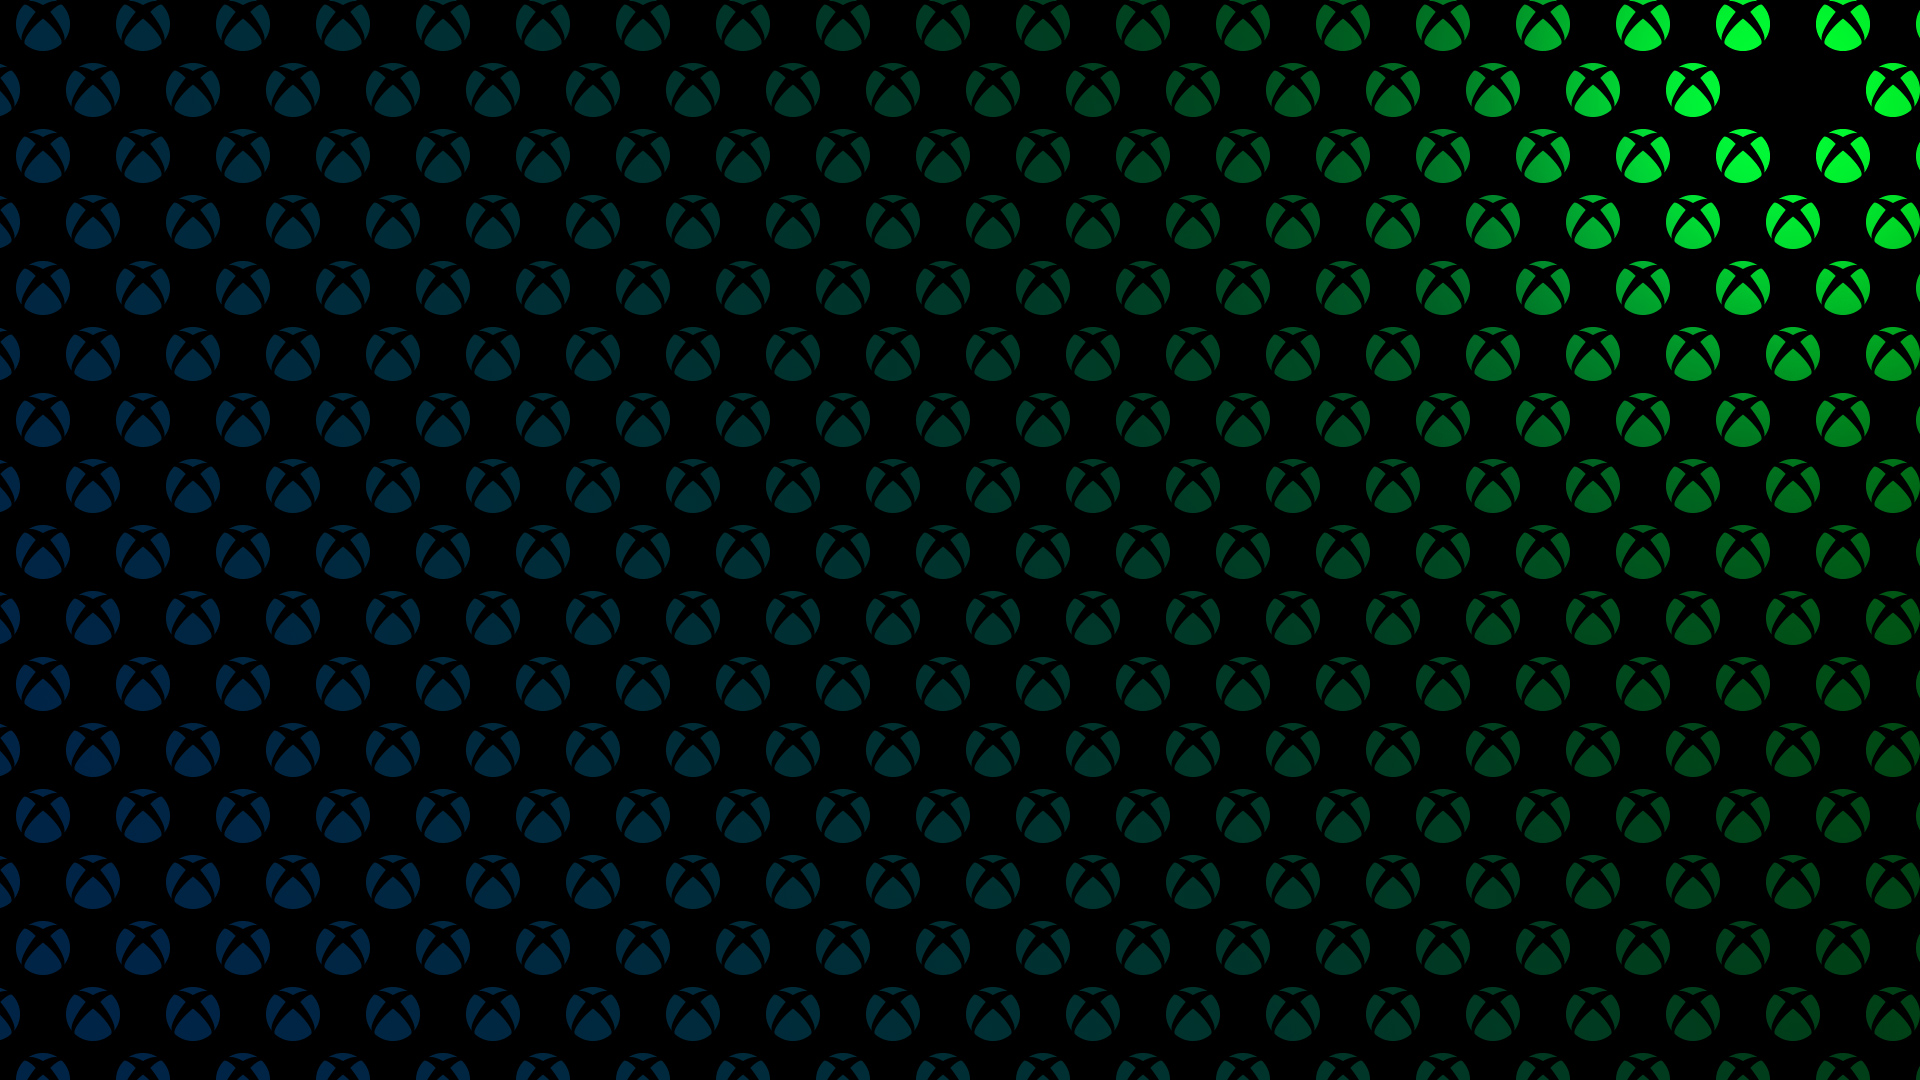 Mẫu logo Xbox kết hợp giữa màu xanh lá cây và xanh dương chắc chắn sẽ thu hút bạn ngay lập tức. Hãy xem hình ảnh liên quan để cảm nhận sự uyển chuyển và độc đáo của thiết kế này.